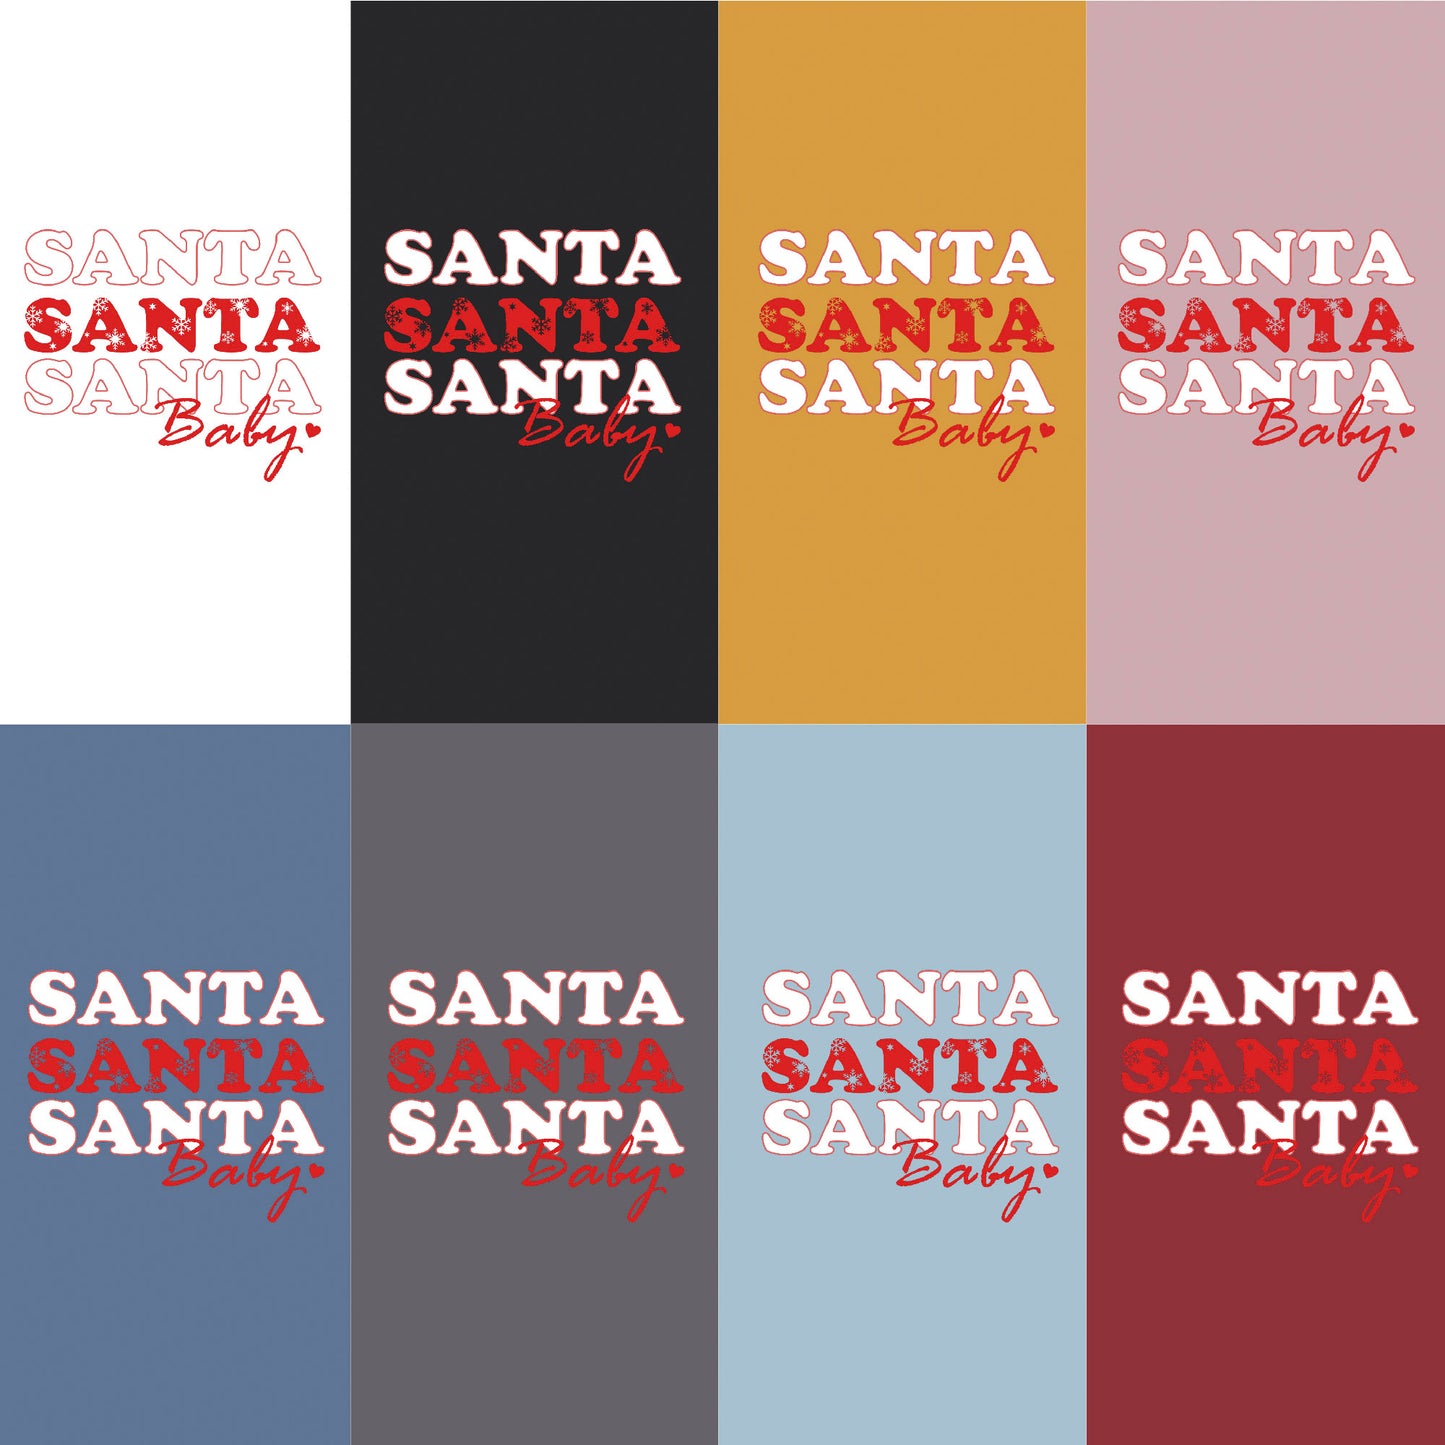 'Santa Santa Santa Baby' Christmas Love T-shirt